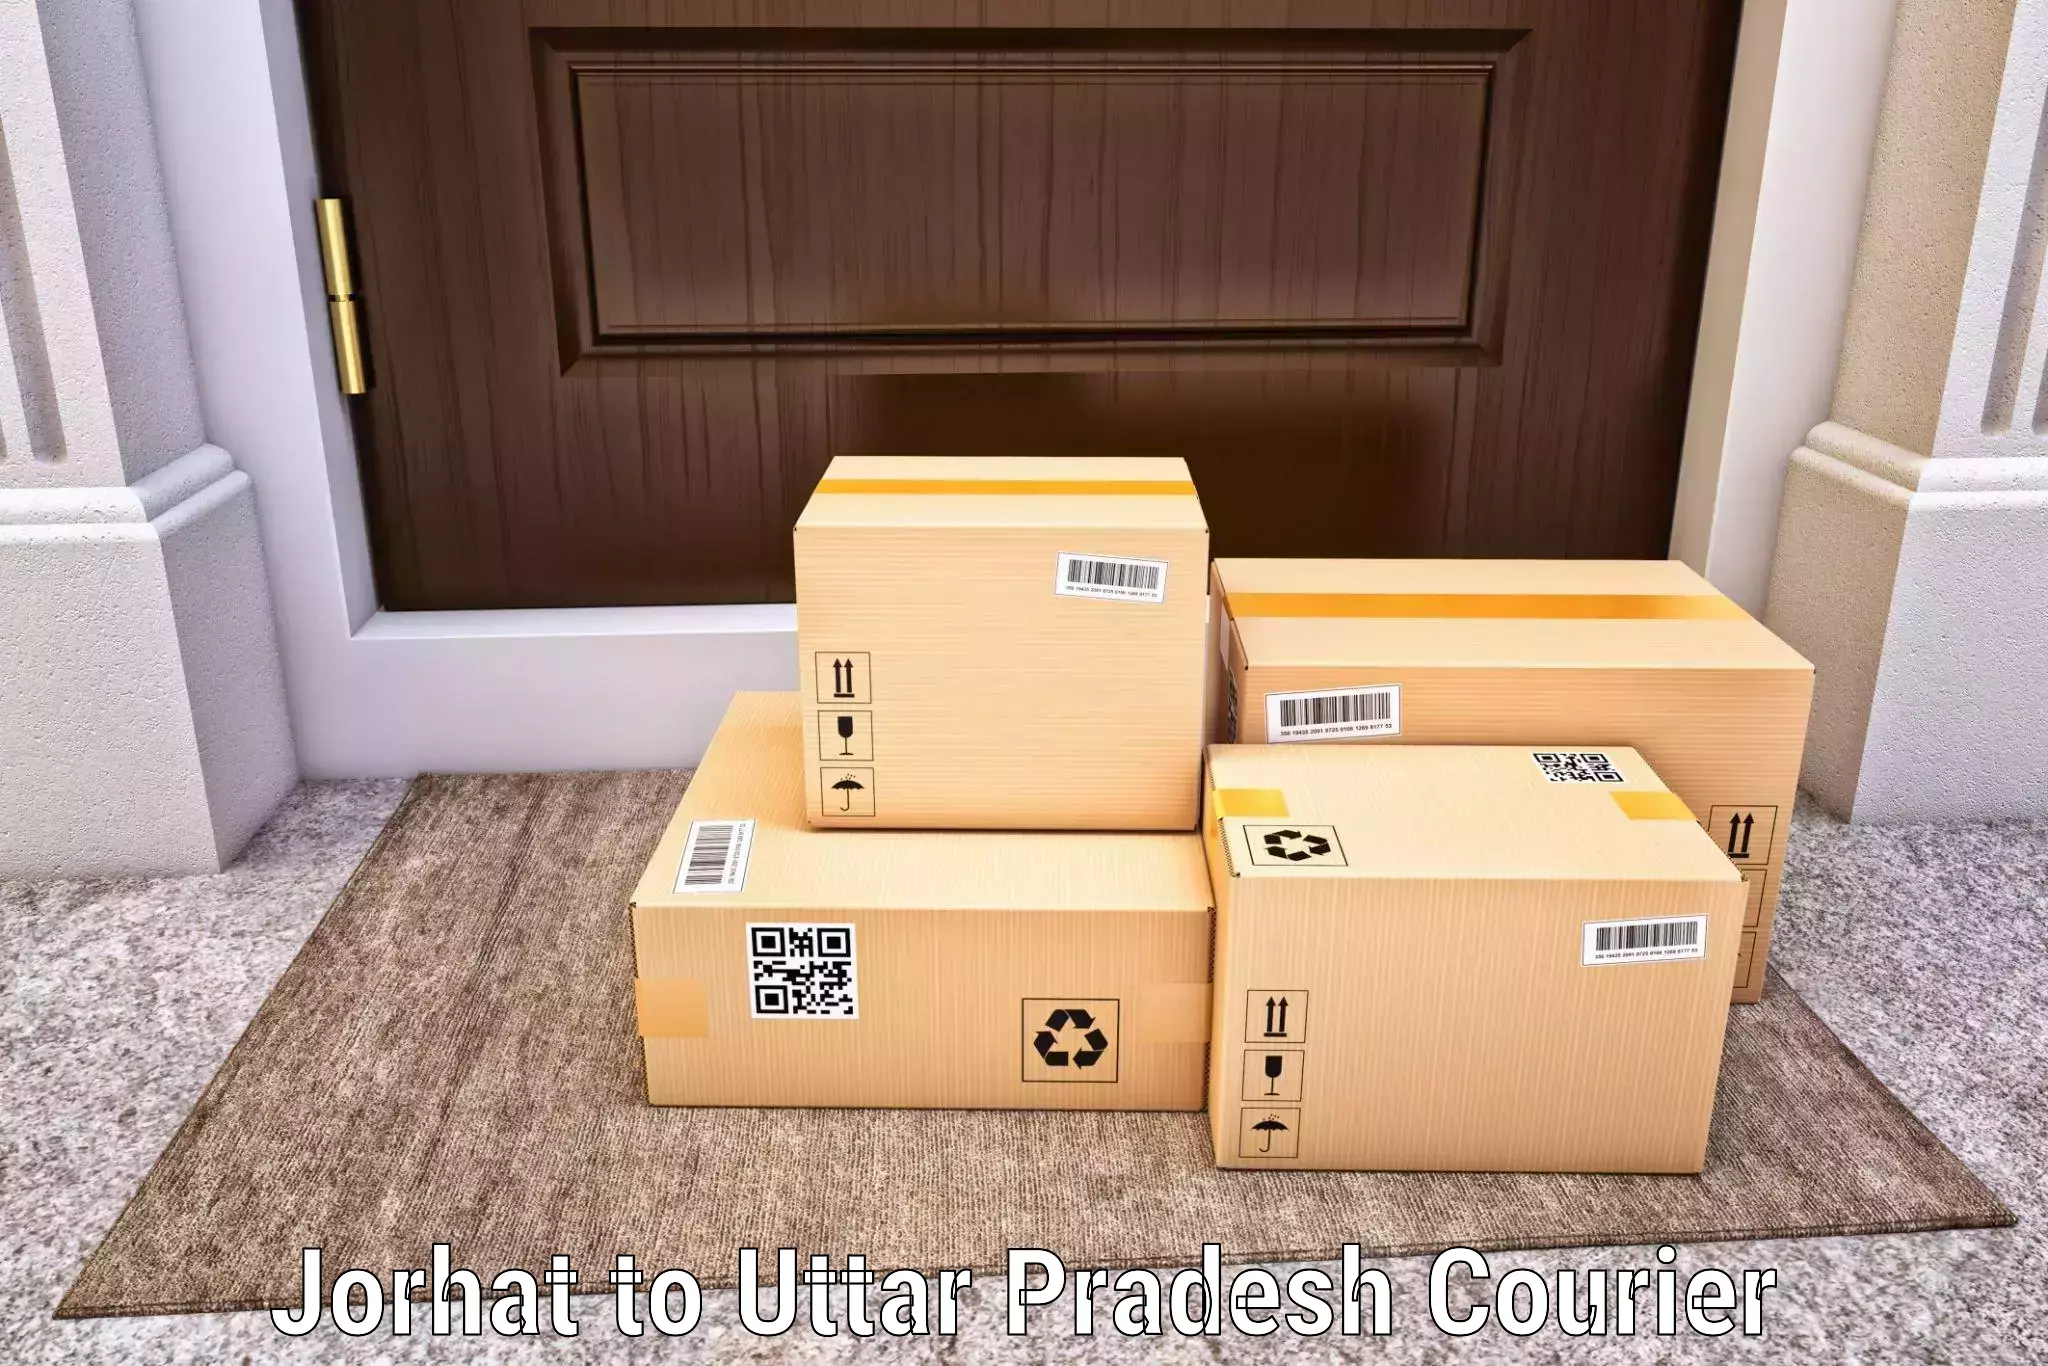 Flexible parcel services Jorhat to Ratanpura